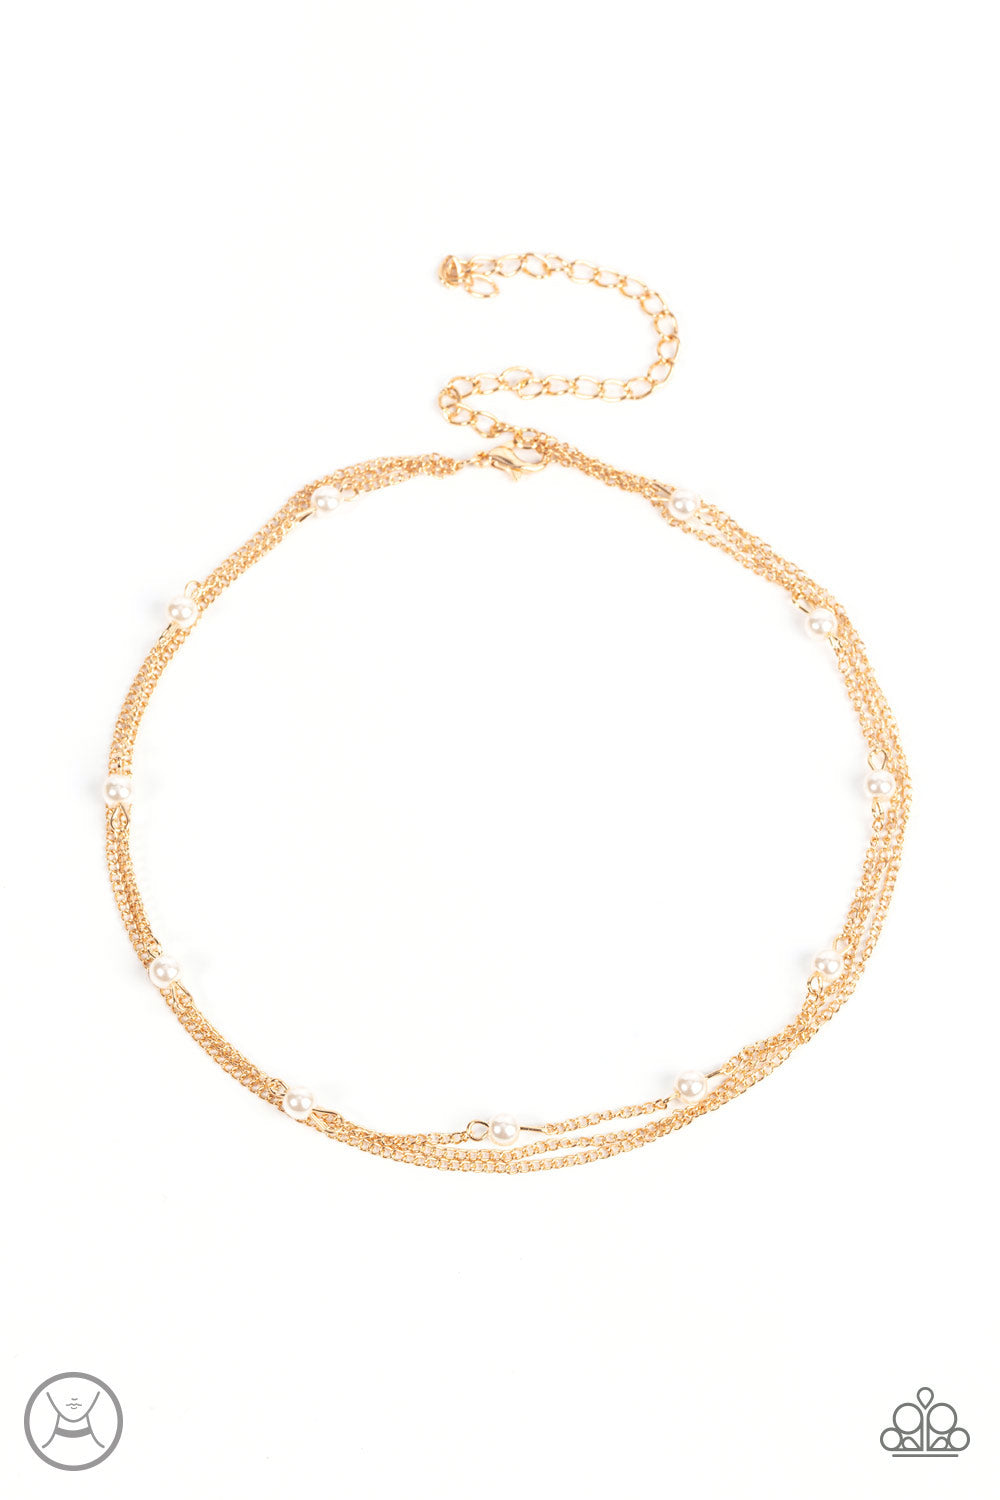 Daintily Dapper - Gold Choker Necklace